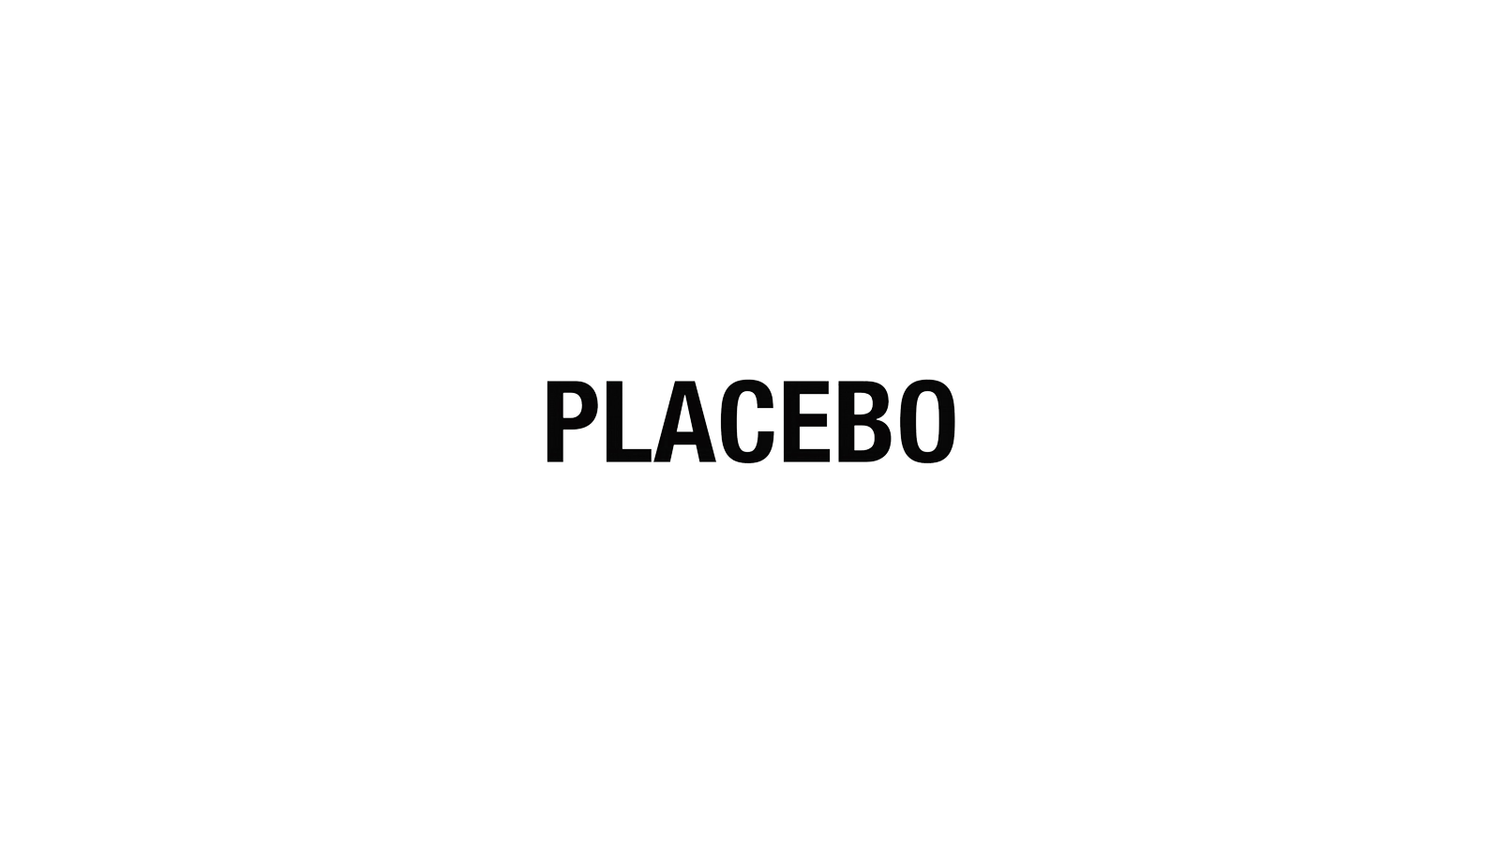 Placebo